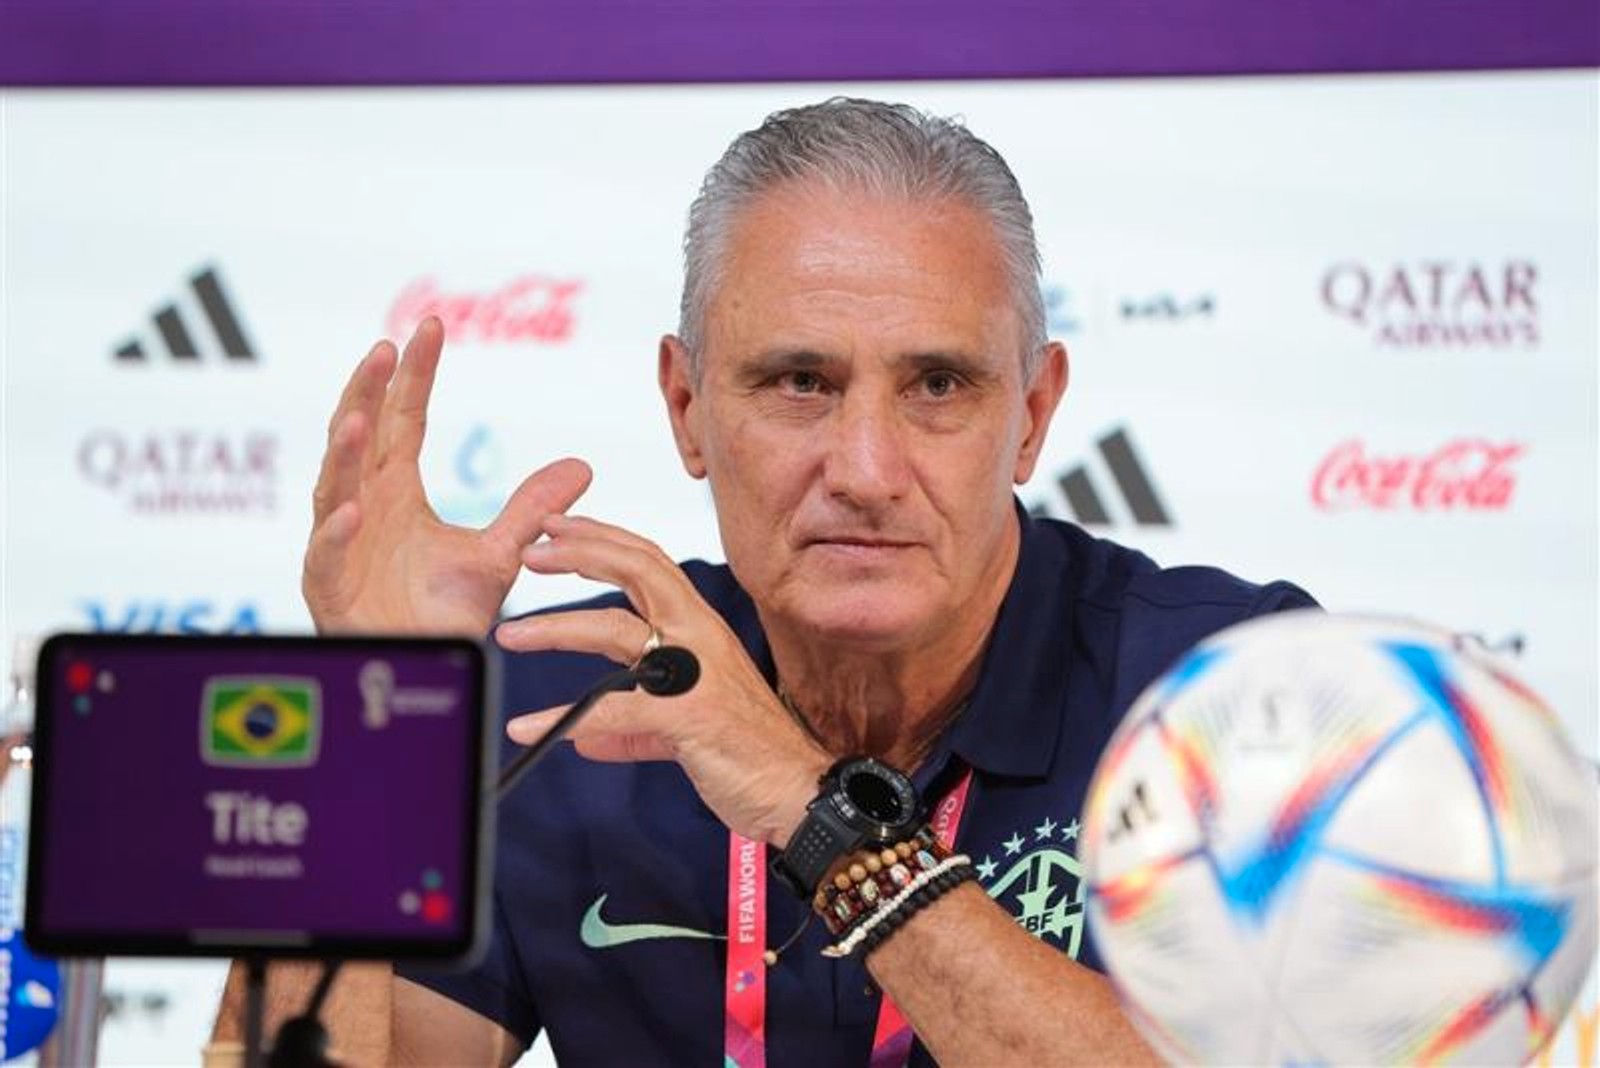 Тите покинул пост главного тренера сборной Бразилии после проигрыша хорватам на чемпионате мира